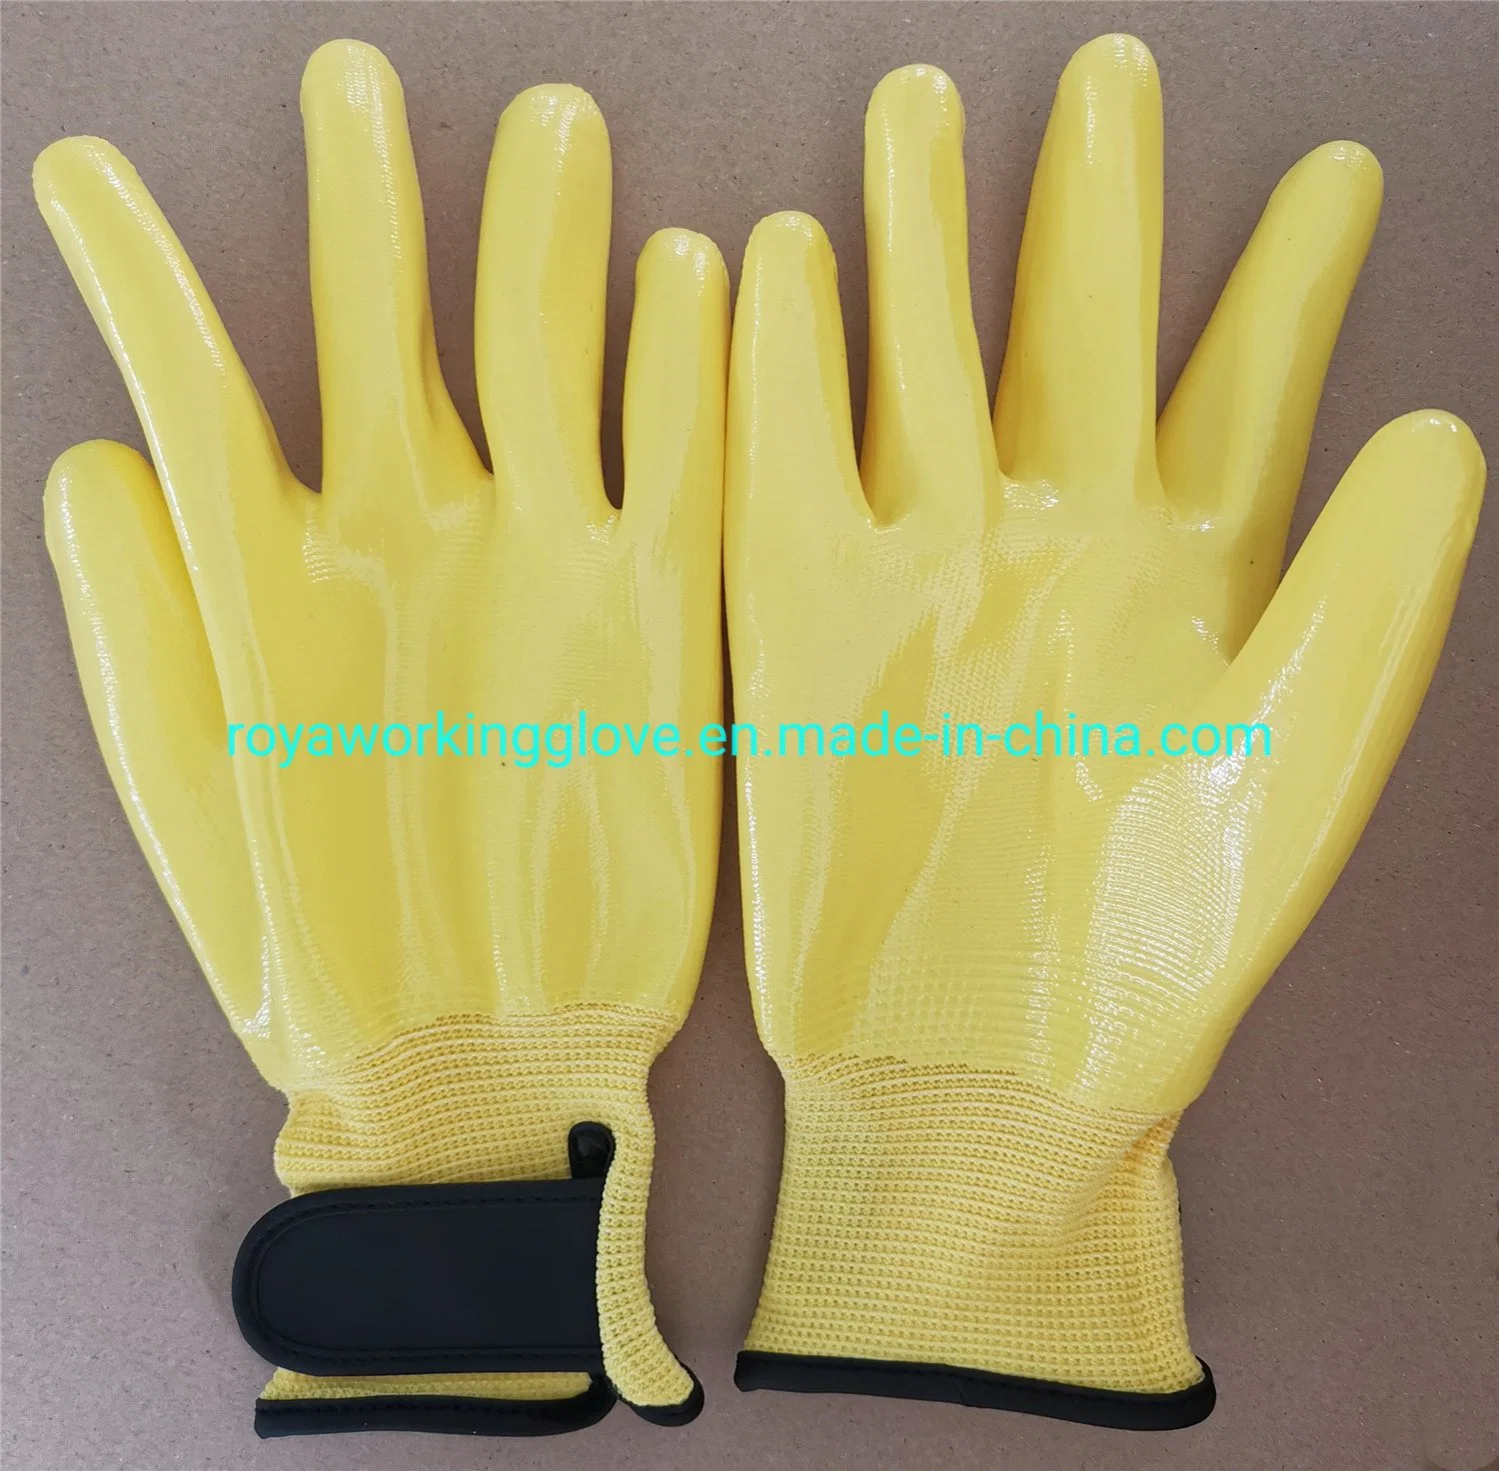 Перчатки с нитриловым покрытием Magic Velcro Faster Cuff/ Промышленная безопасность Рабочие перчатки защищают перчатки для работы с руками